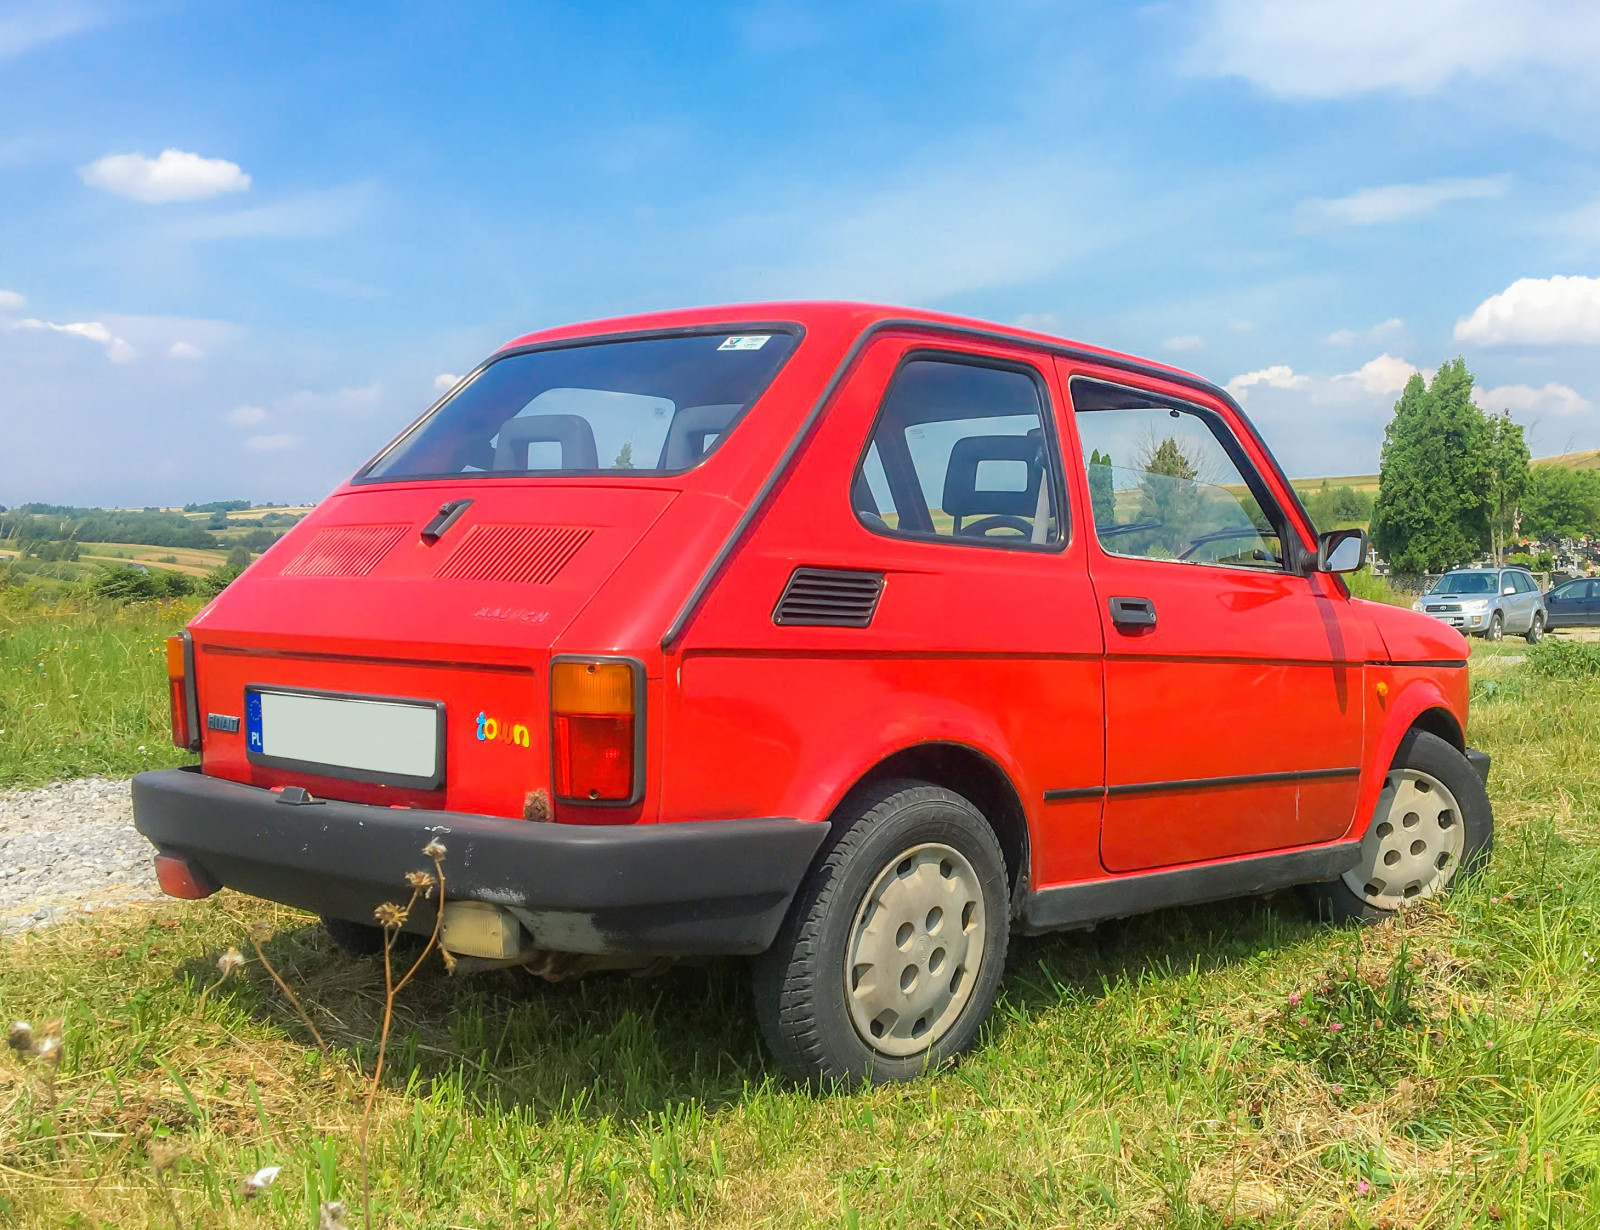 Wynajęcie Fiata 126p w Krakowie Prezentmarzeń